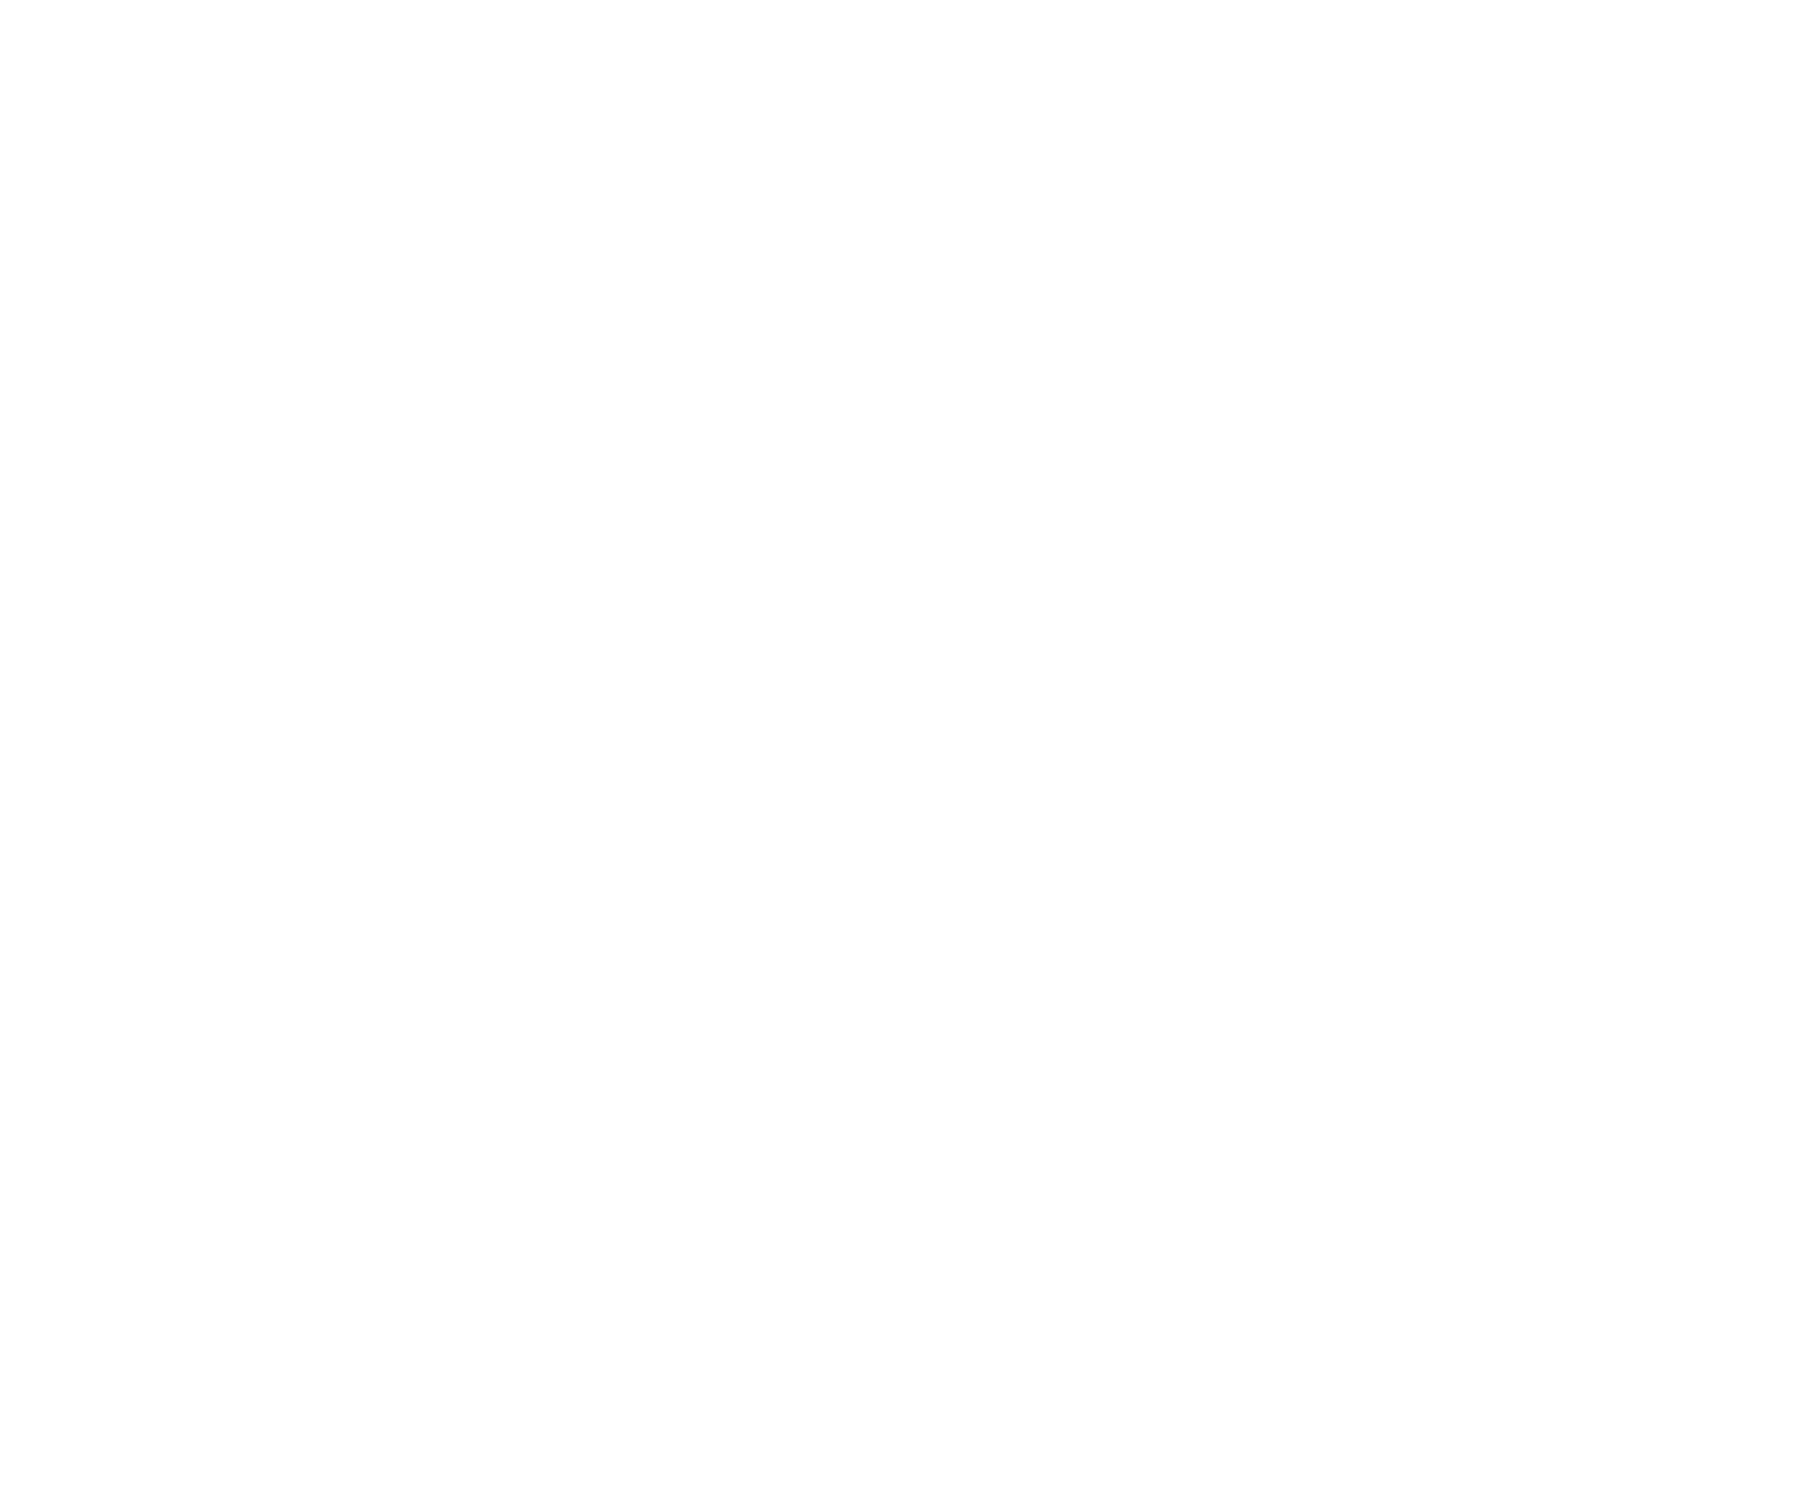 https://bangkokpremiums.com/wp-content/uploads/2020/12/cropped-Bangkok-Premiums-Logo-02.png